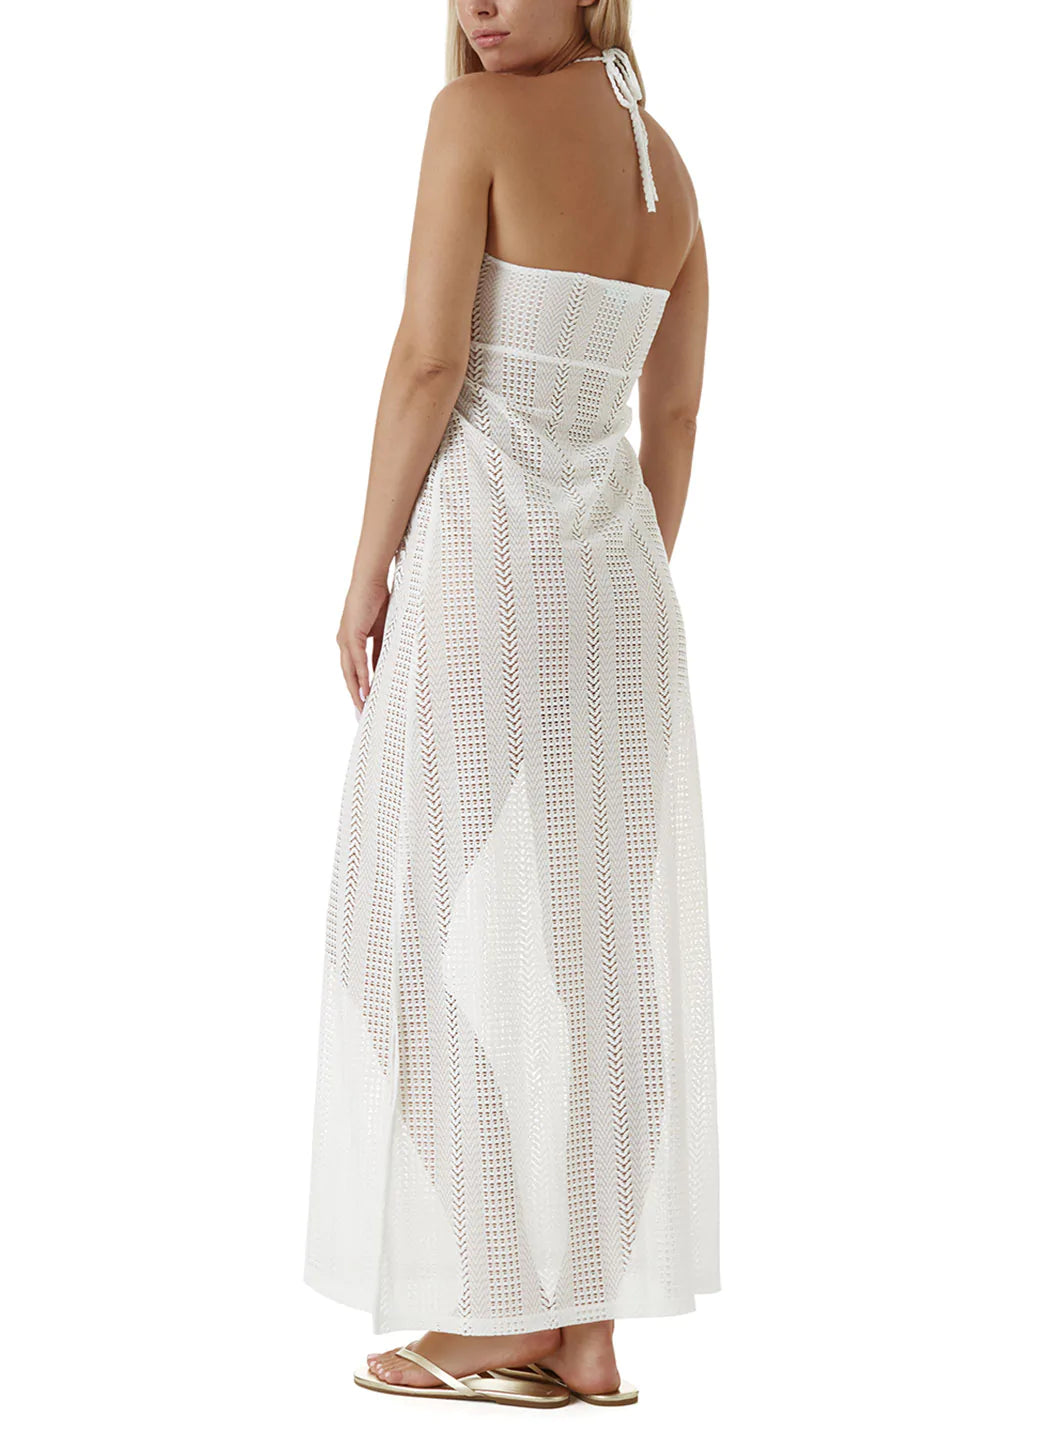 Mila White Dress Model 2023 B  